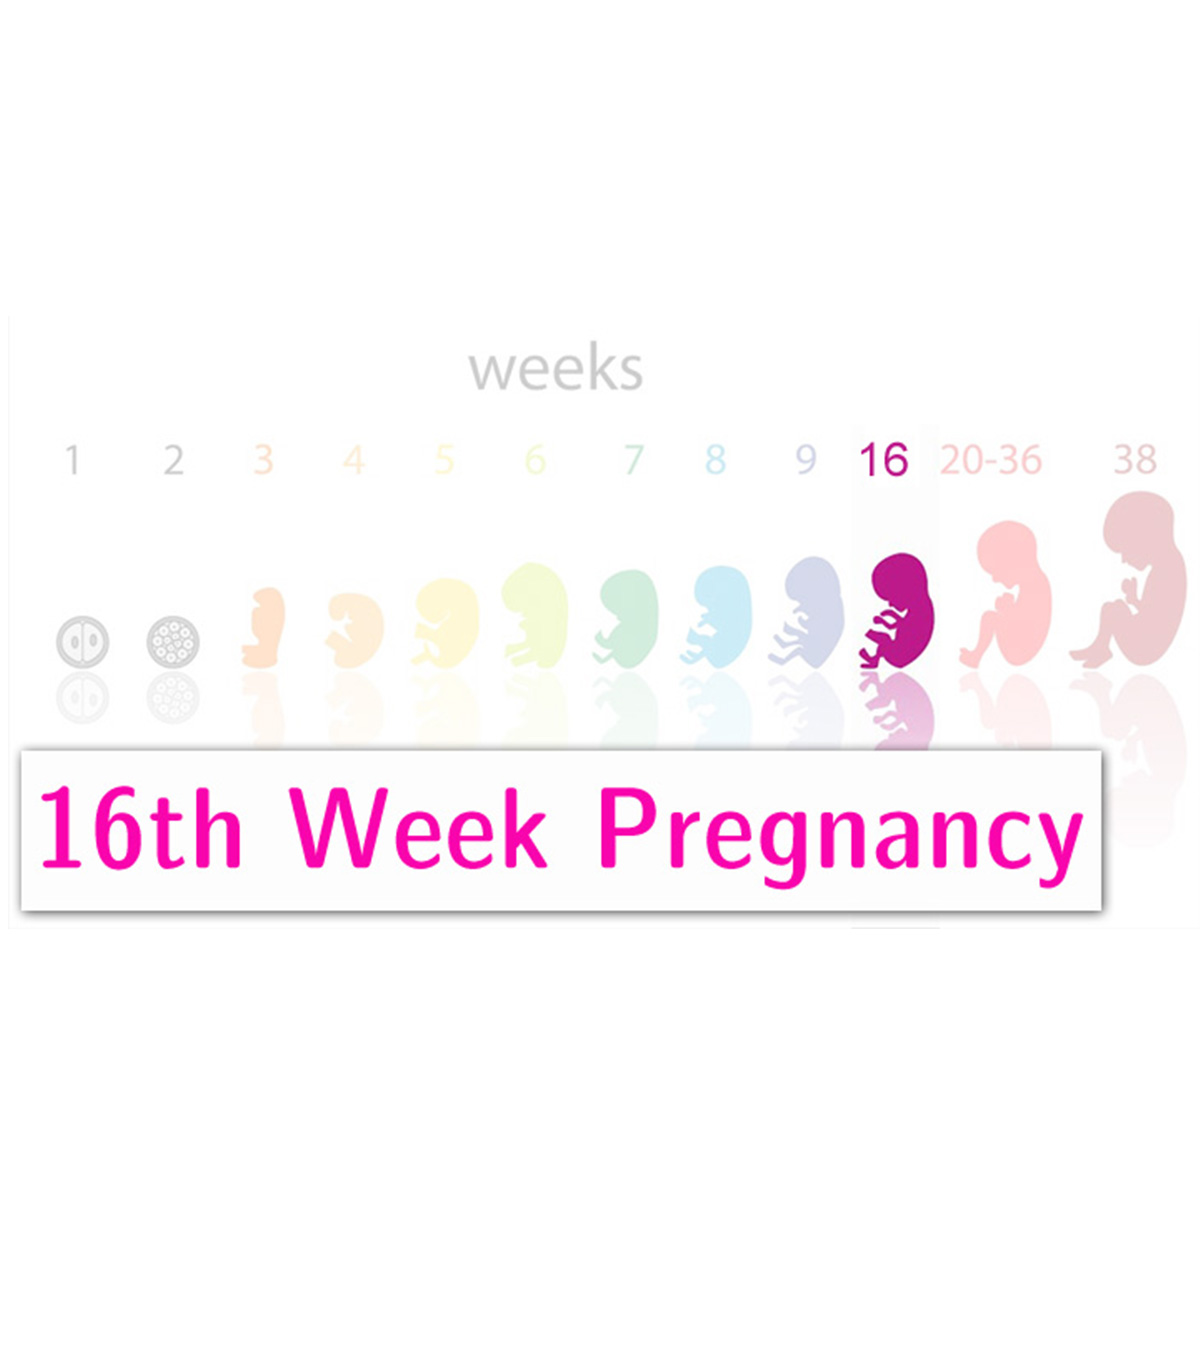 怀孕16周:症状、提示和婴儿发育